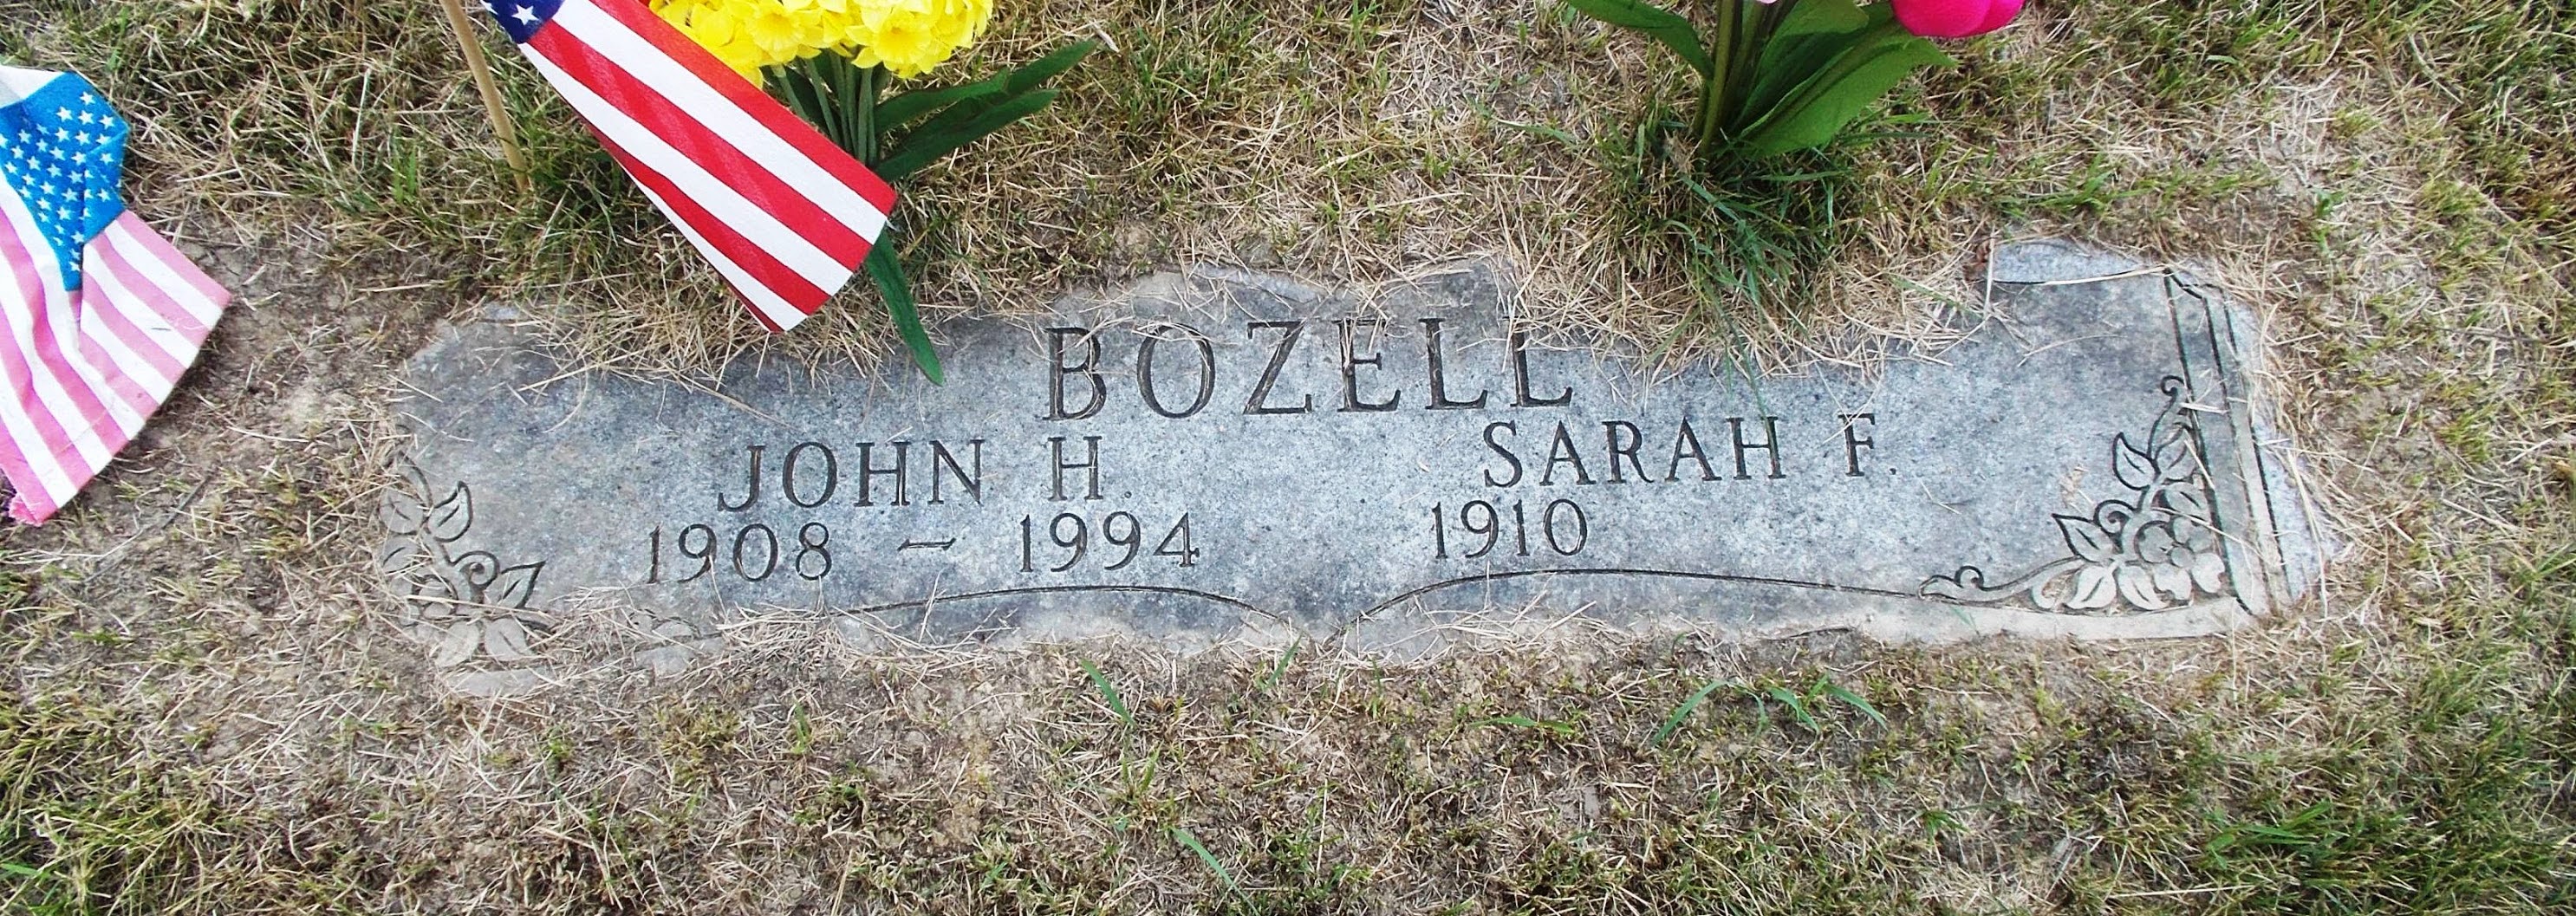 Sarah F Bozell